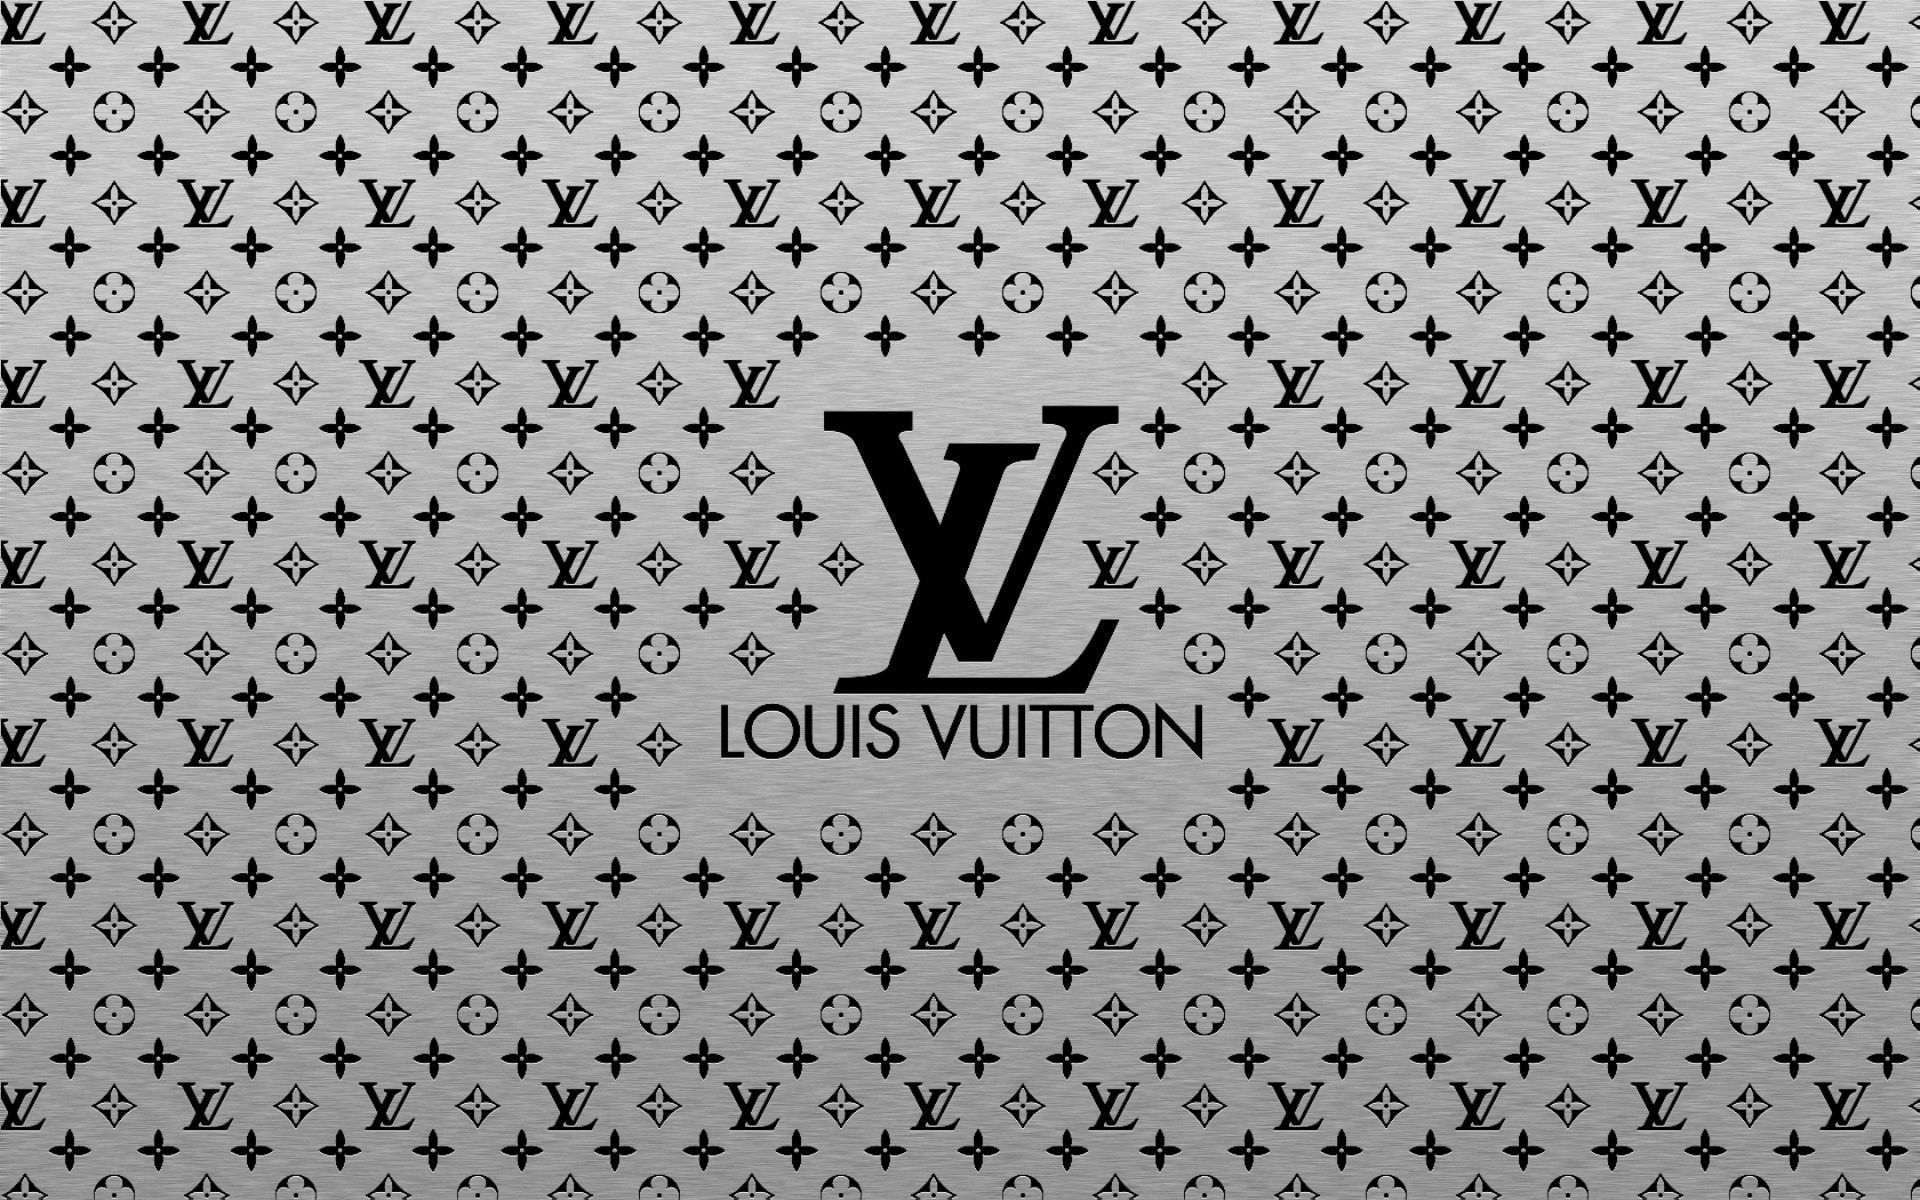 LV Wallpapers HD: Với sự trang nhã, tinh tế và đẳng cấp của thương hiệu Louis Vuitton, các hình nền LV Wallpapers HD là nơi để bạn tìm thấy những điều đó. Với độ phân giải cao, hình ảnh sắc nét và đầy màu sắc, LV Wallpapers HD sẽ làm bạn không thể rời mắt khỏi thiết bị của mình.